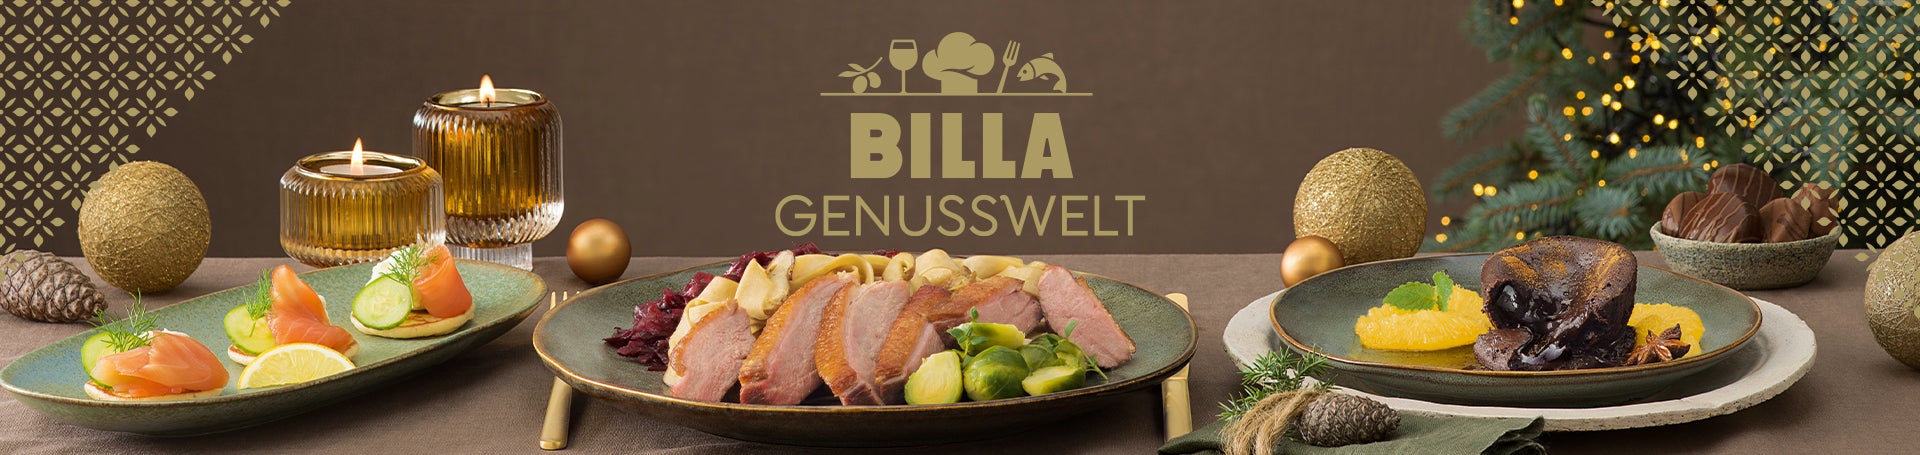 BILLA Genusswelt | BILLA Online Shop